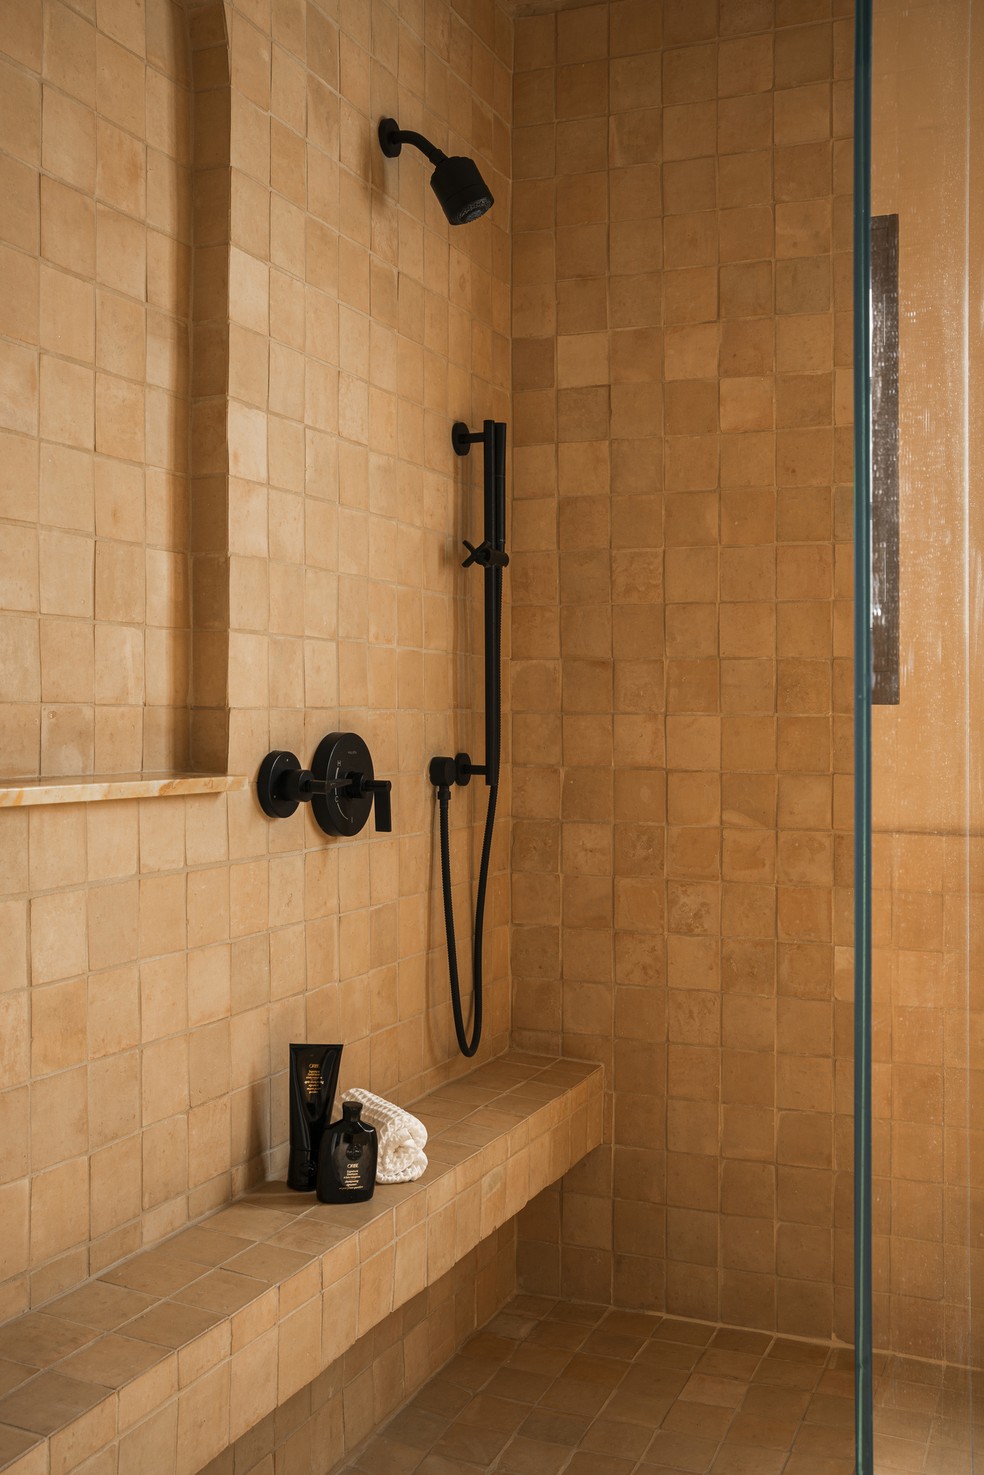 Décor do dia: banheiro com azulejos em tons terrosos — Foto: Gavin Cater